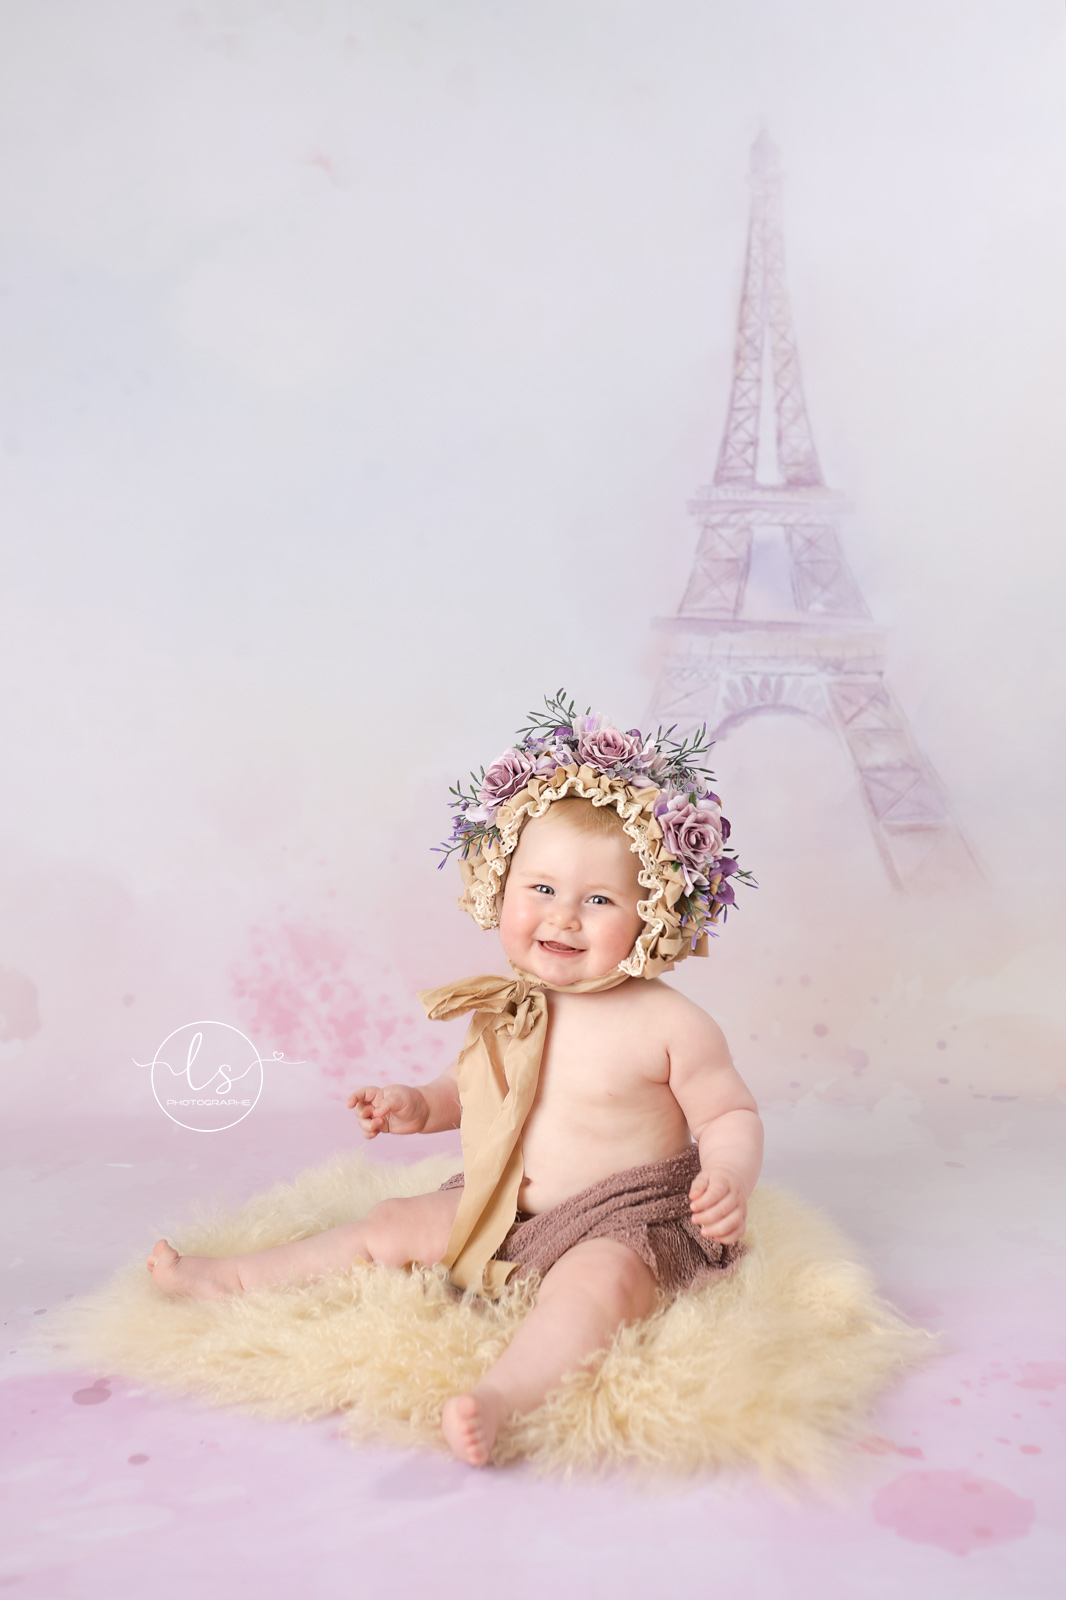 photo bébé bonnet fleurs Belgique tour Eiffel 